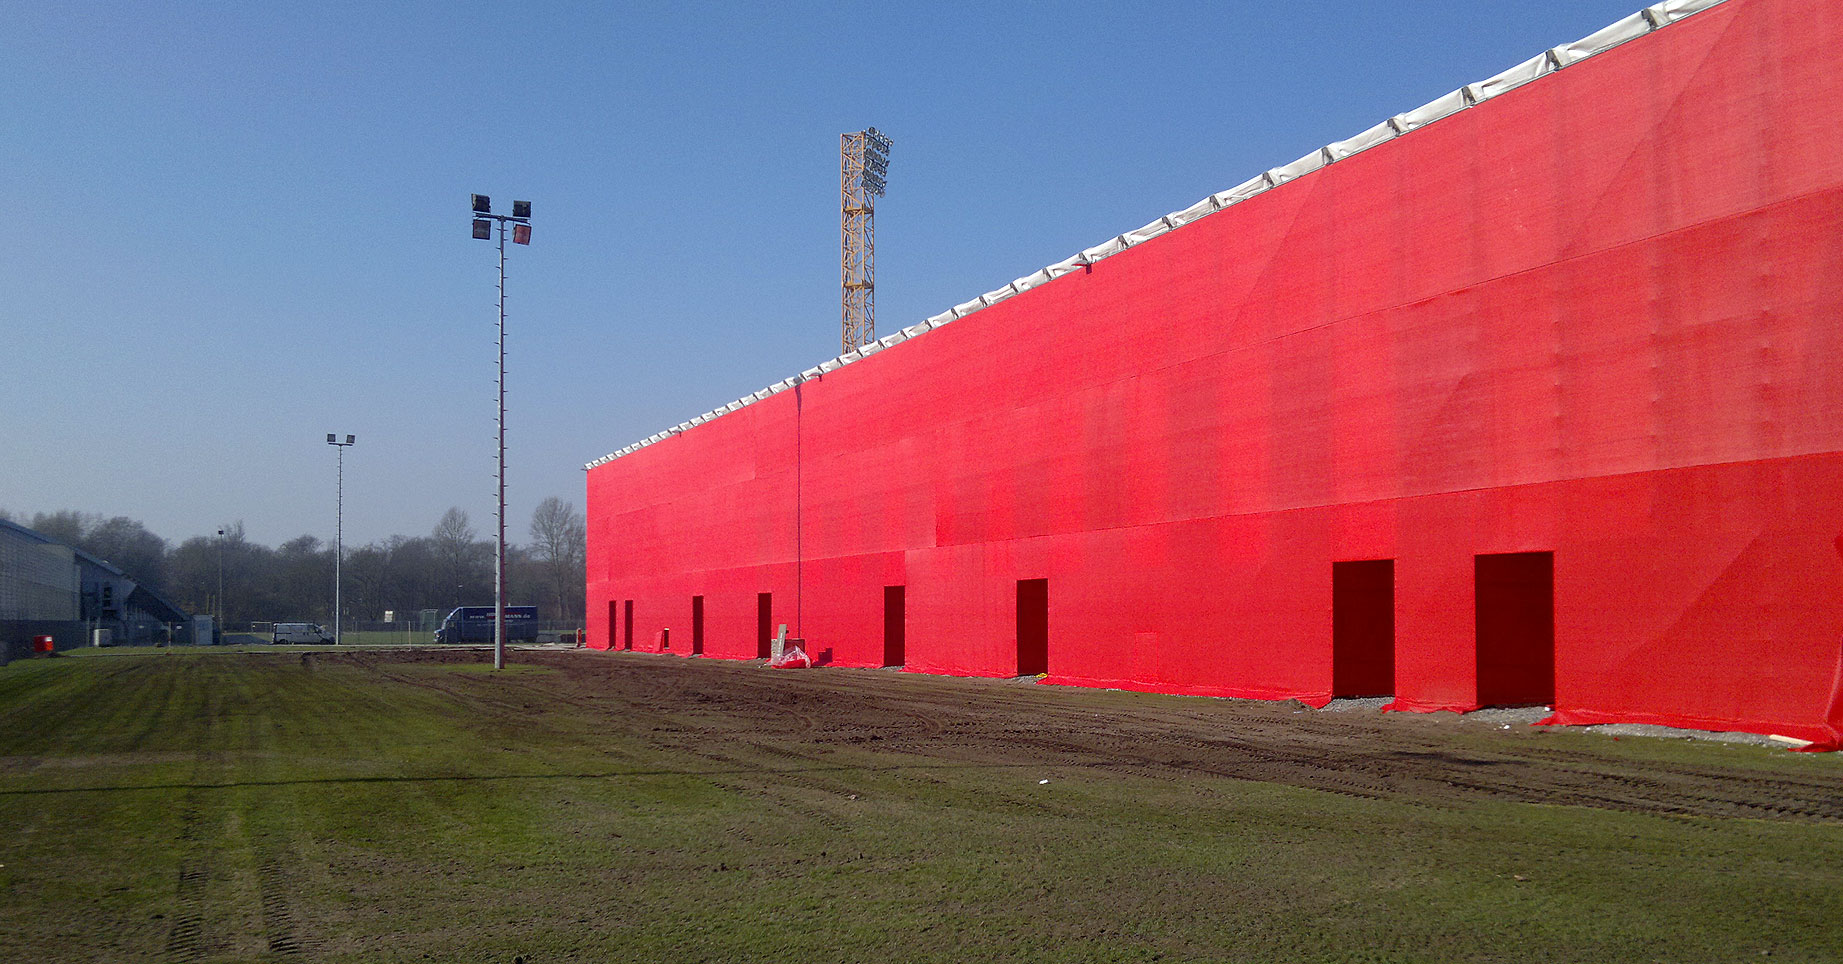 Temporäres Stadion für Fortuna Düsseldorf Nüssli AG (Schweiz), 2011